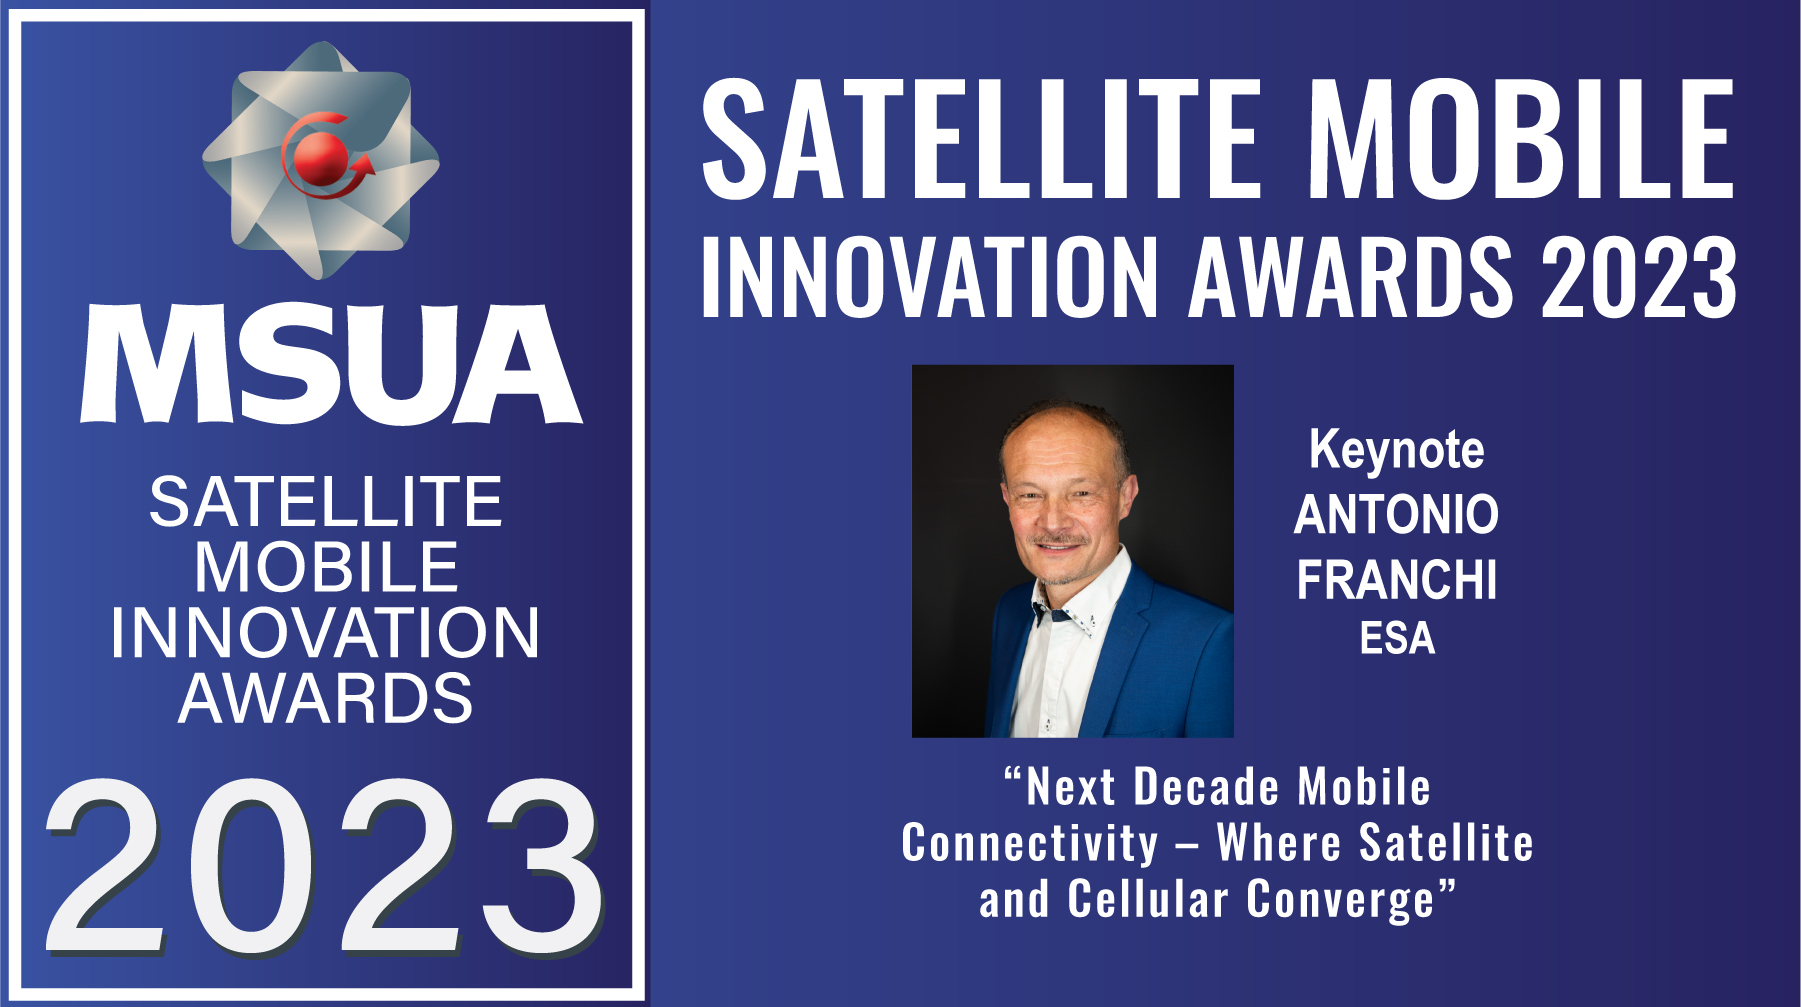 MSUA Satellite Mobile Innovation Awards 2023